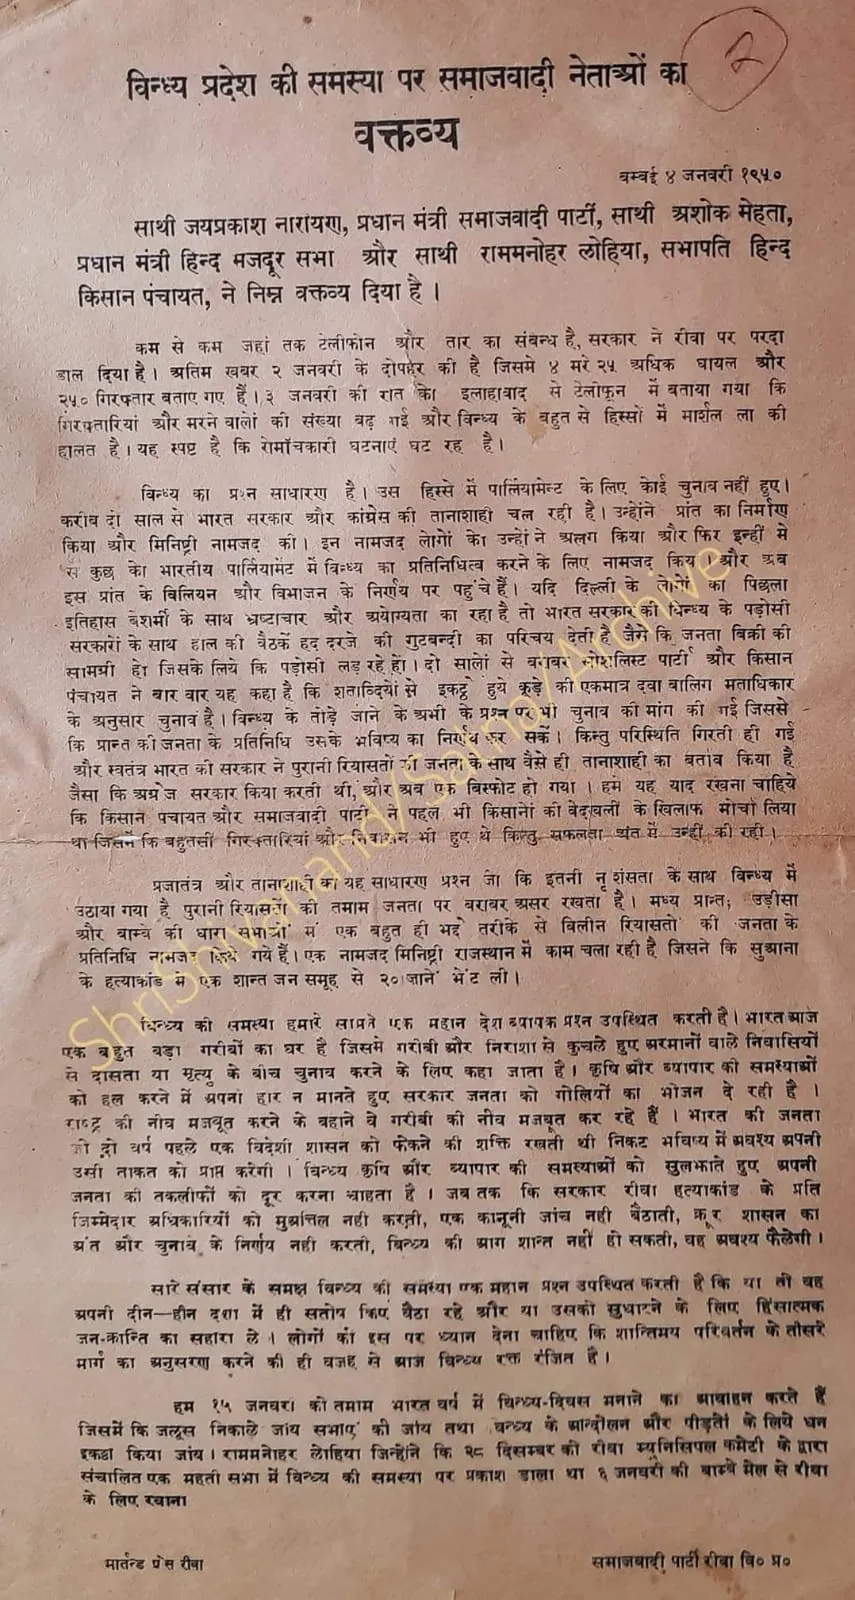 ऐतिहासिक दस्तावेजी बुलेटिन जिसे सोशलिस्ट पार्टी ने मुंबई से जारी किया था।